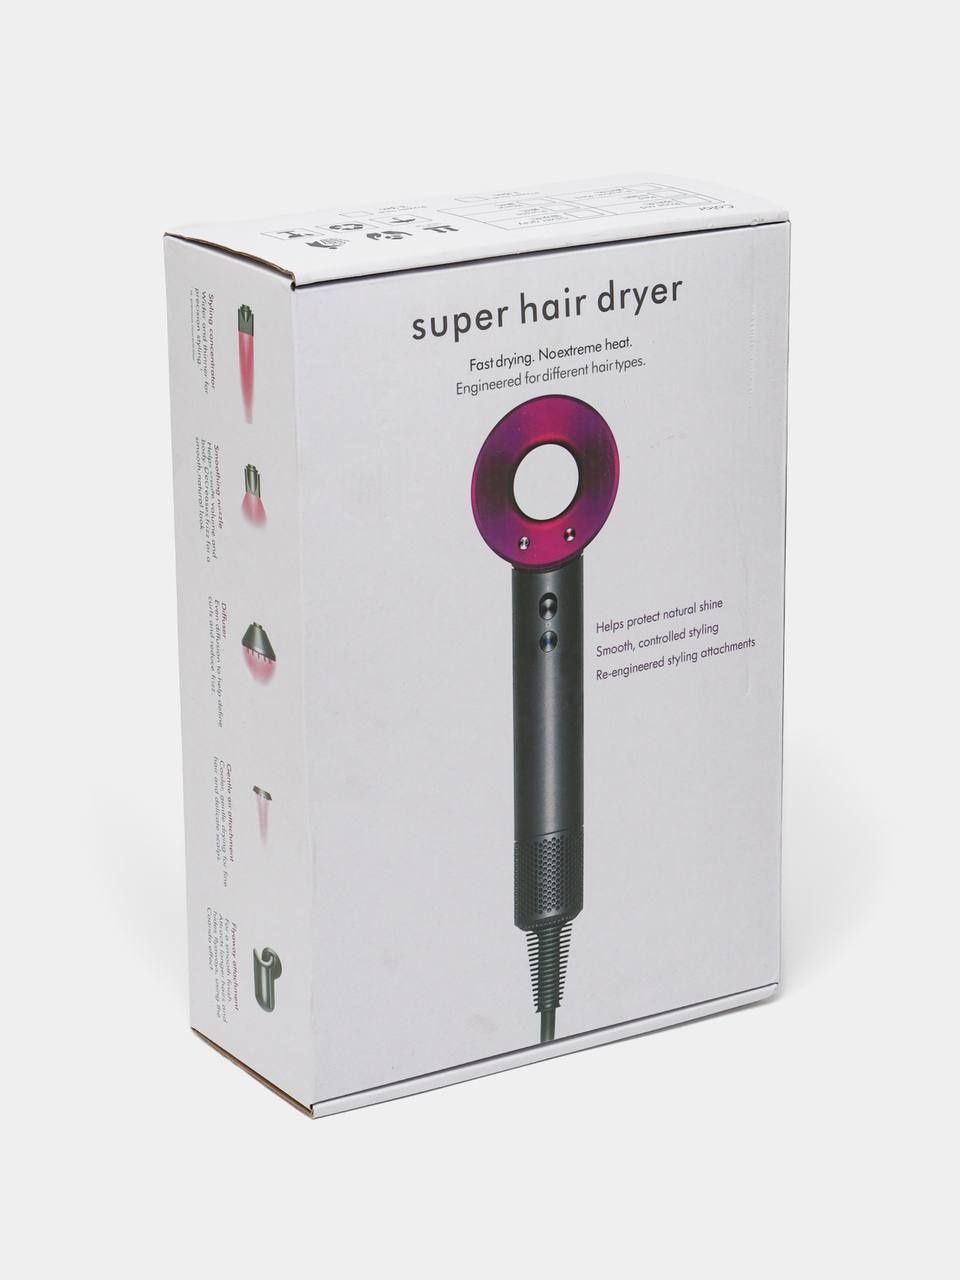 Dyson super hair dryer